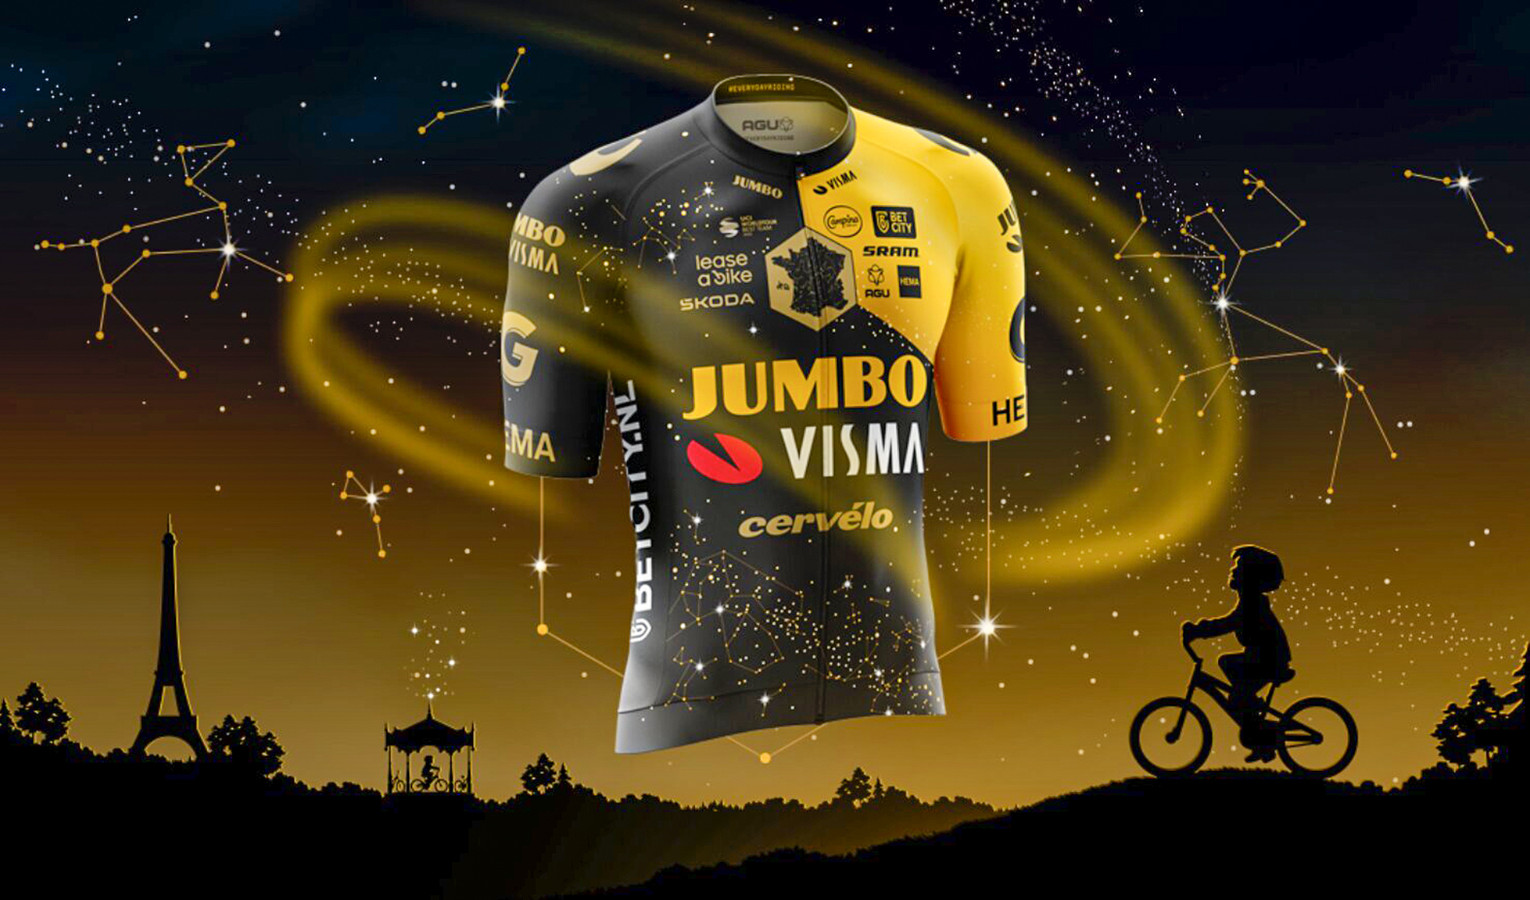 JumboVisma lanceert speciaal shirt voor Tour de France 'We hopen de